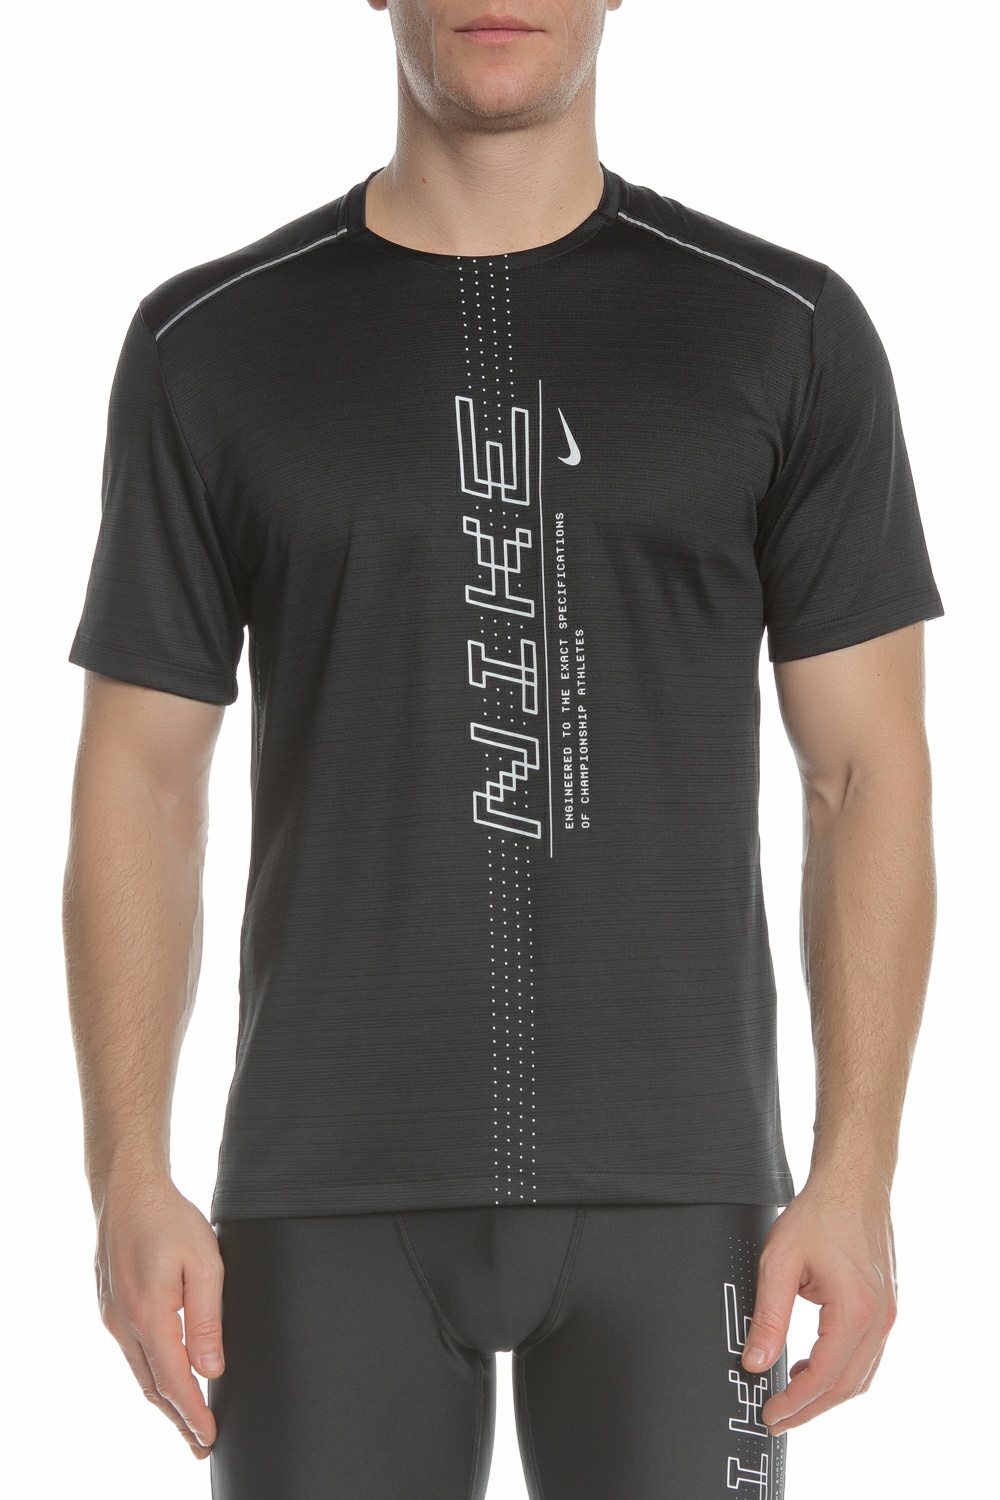 Ανδρικά/Ρούχα/Αθλητικά/T-shirt NIKE - Ανδρική μπλούζα NIKE MILER SS PO GX FF μαύρη